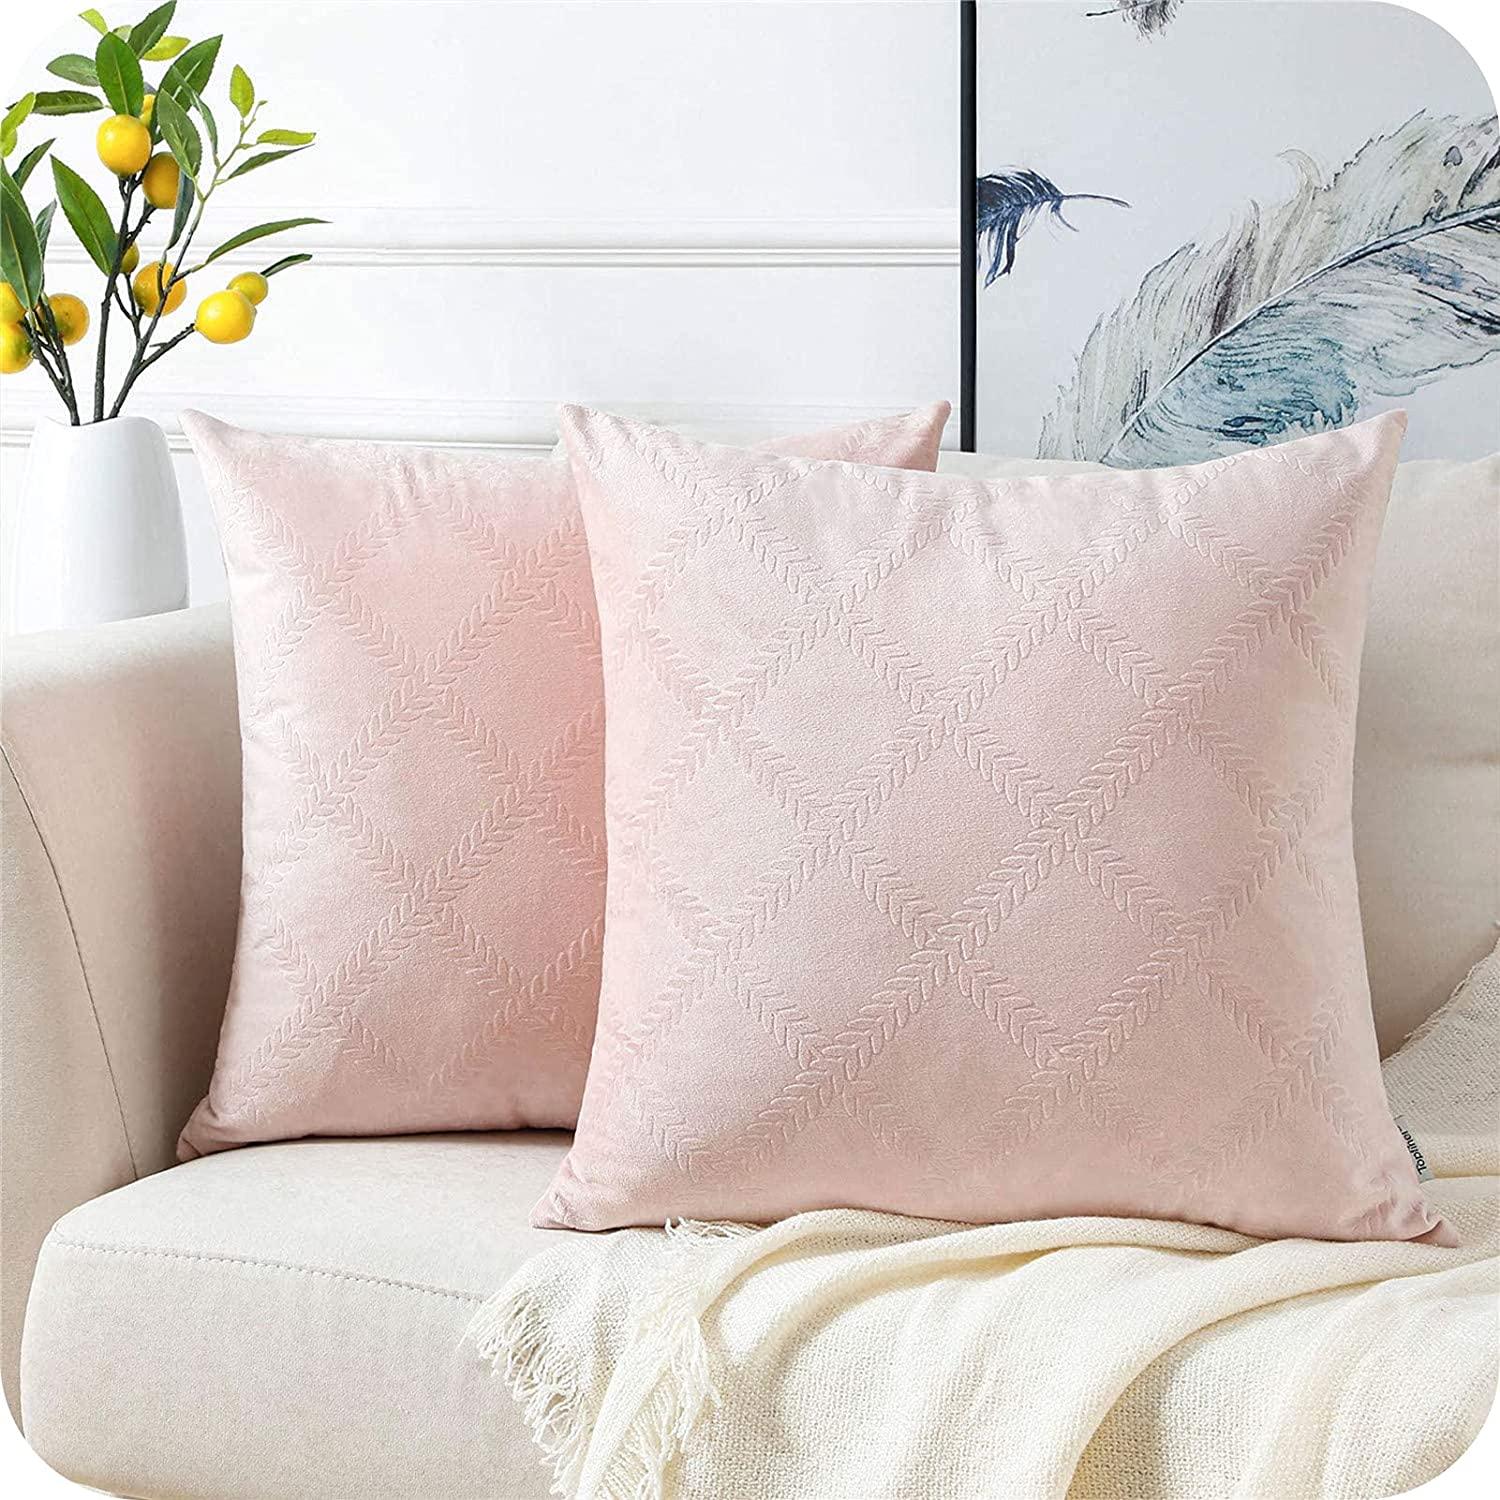 Velvet Pillows Cover with Leaf Pattern for Sofa Bedroom Office Car,2 Packs - Topfinel